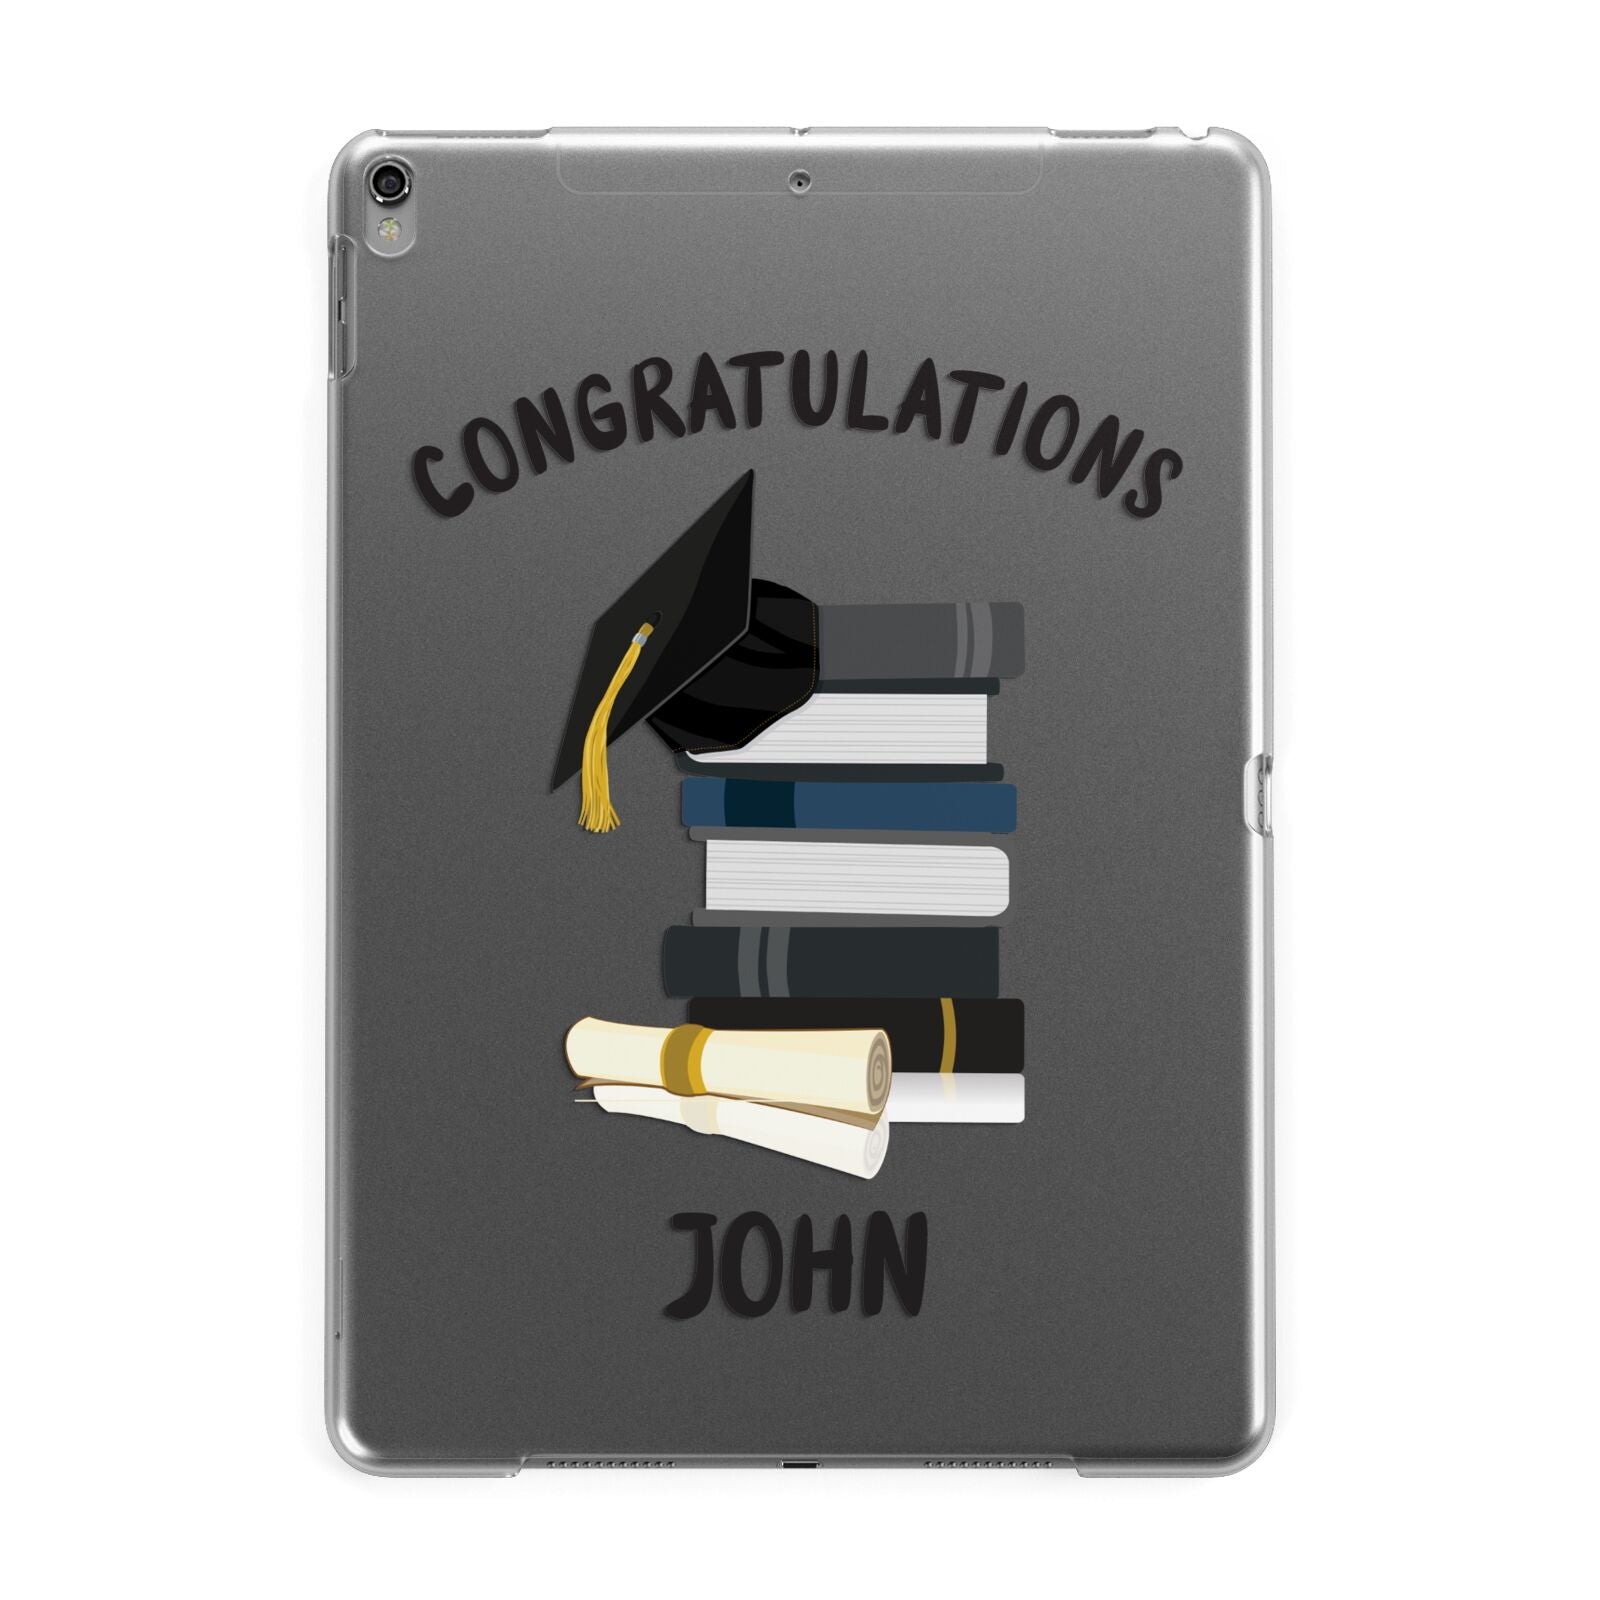 Congratulations Graduate Apple iPad Grey Case